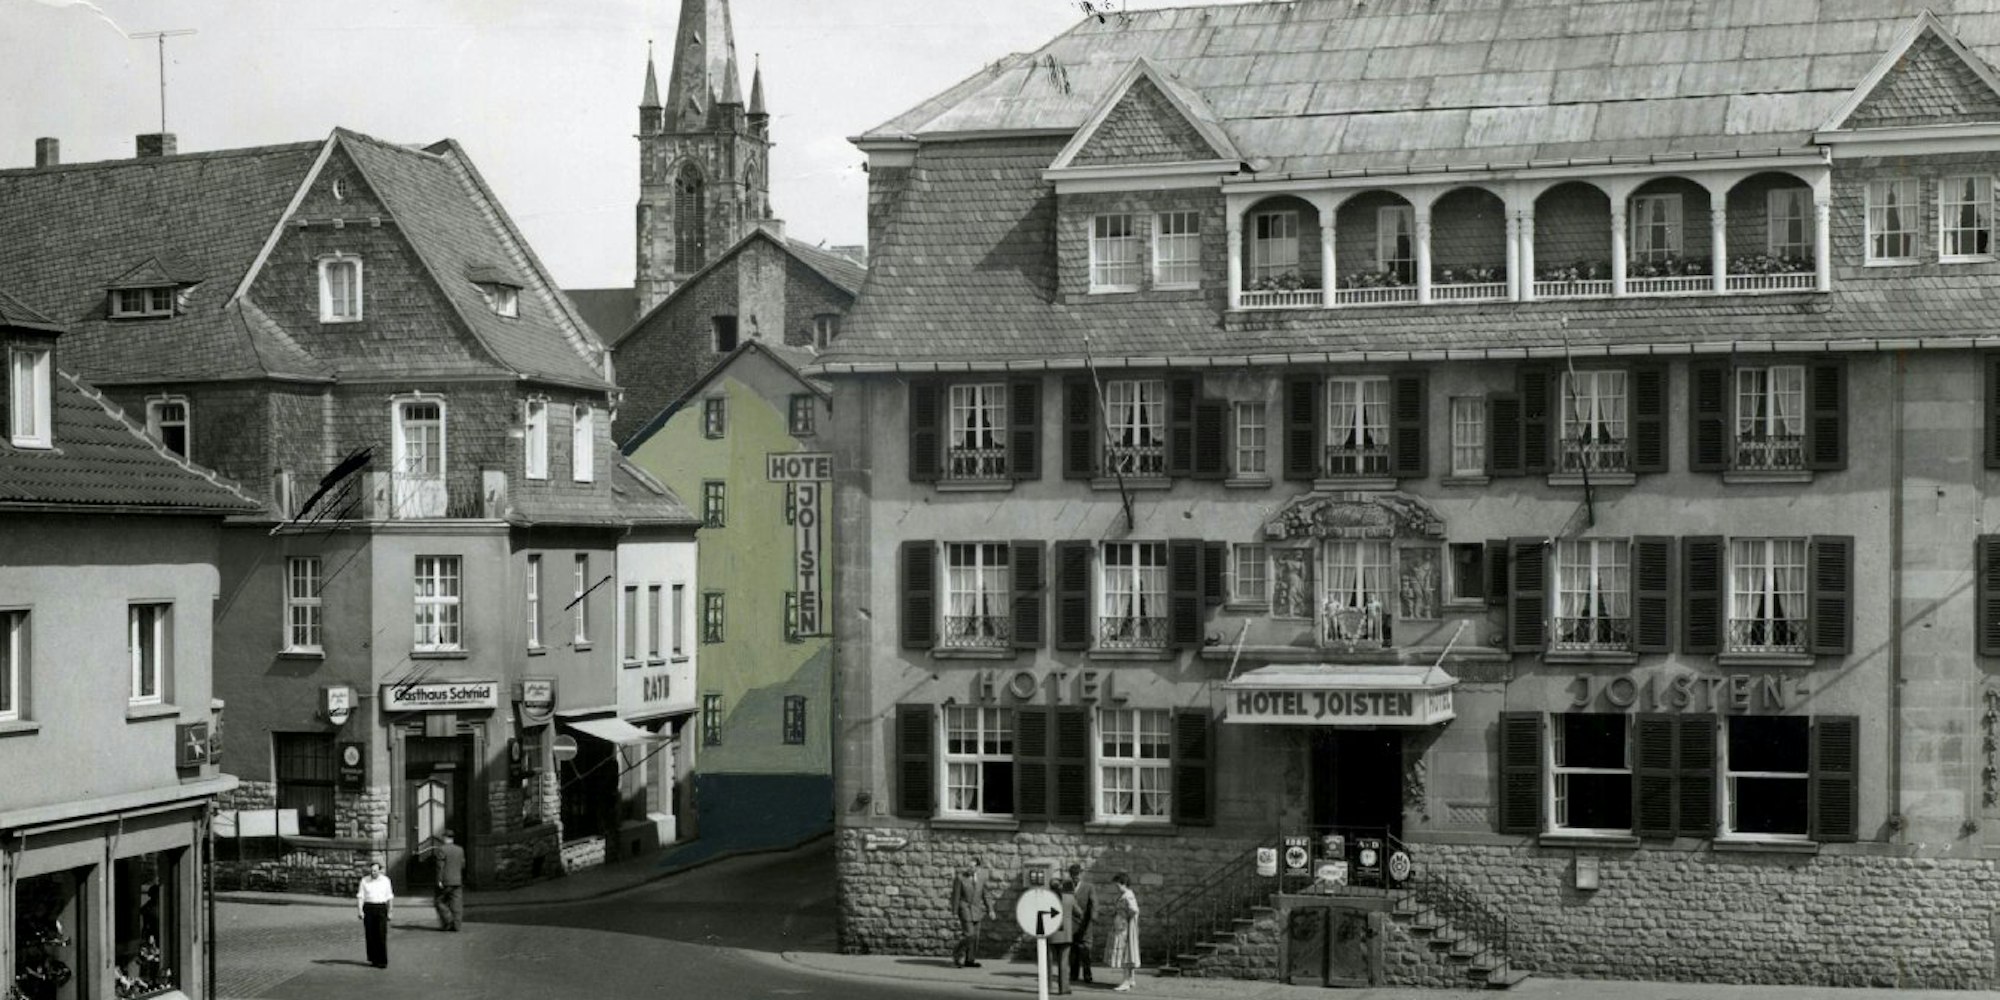 Das Hotel Joisten in seiner ganzen Pracht. Es stand viele Jahrzehnte im Zentrum des Euskirchener Gesellschaftslebens.